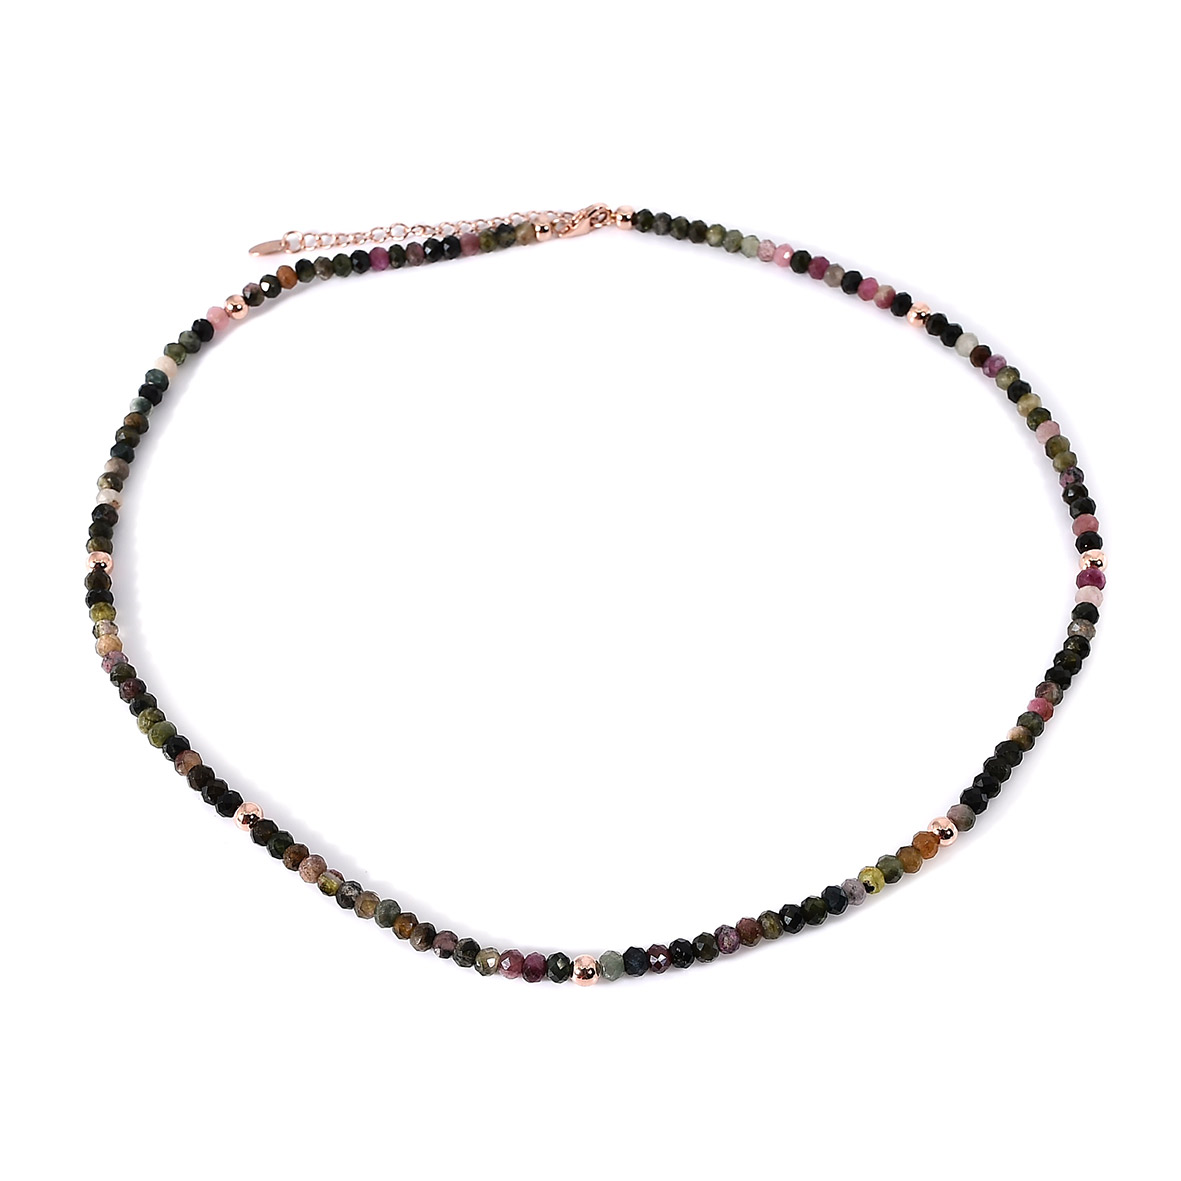 Damen Halskette mit geschliffenen Turmalin Steinen und 925 Sterling Silber rosé vergoldet